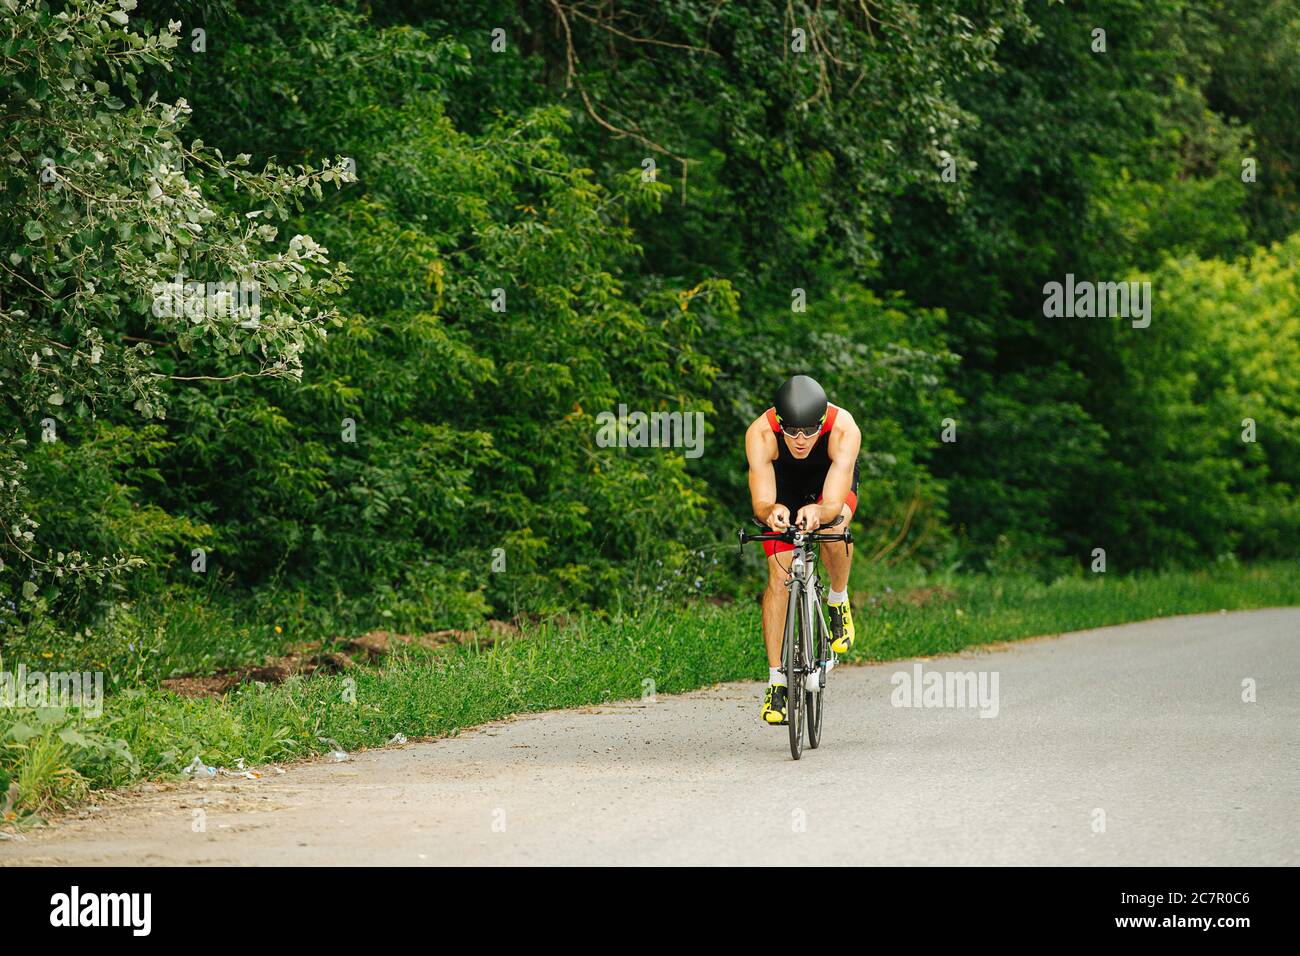 Schöner muskulöser Profi-Biker auf einer Straße mit Bäumen an den Seiten reiten Stockfoto